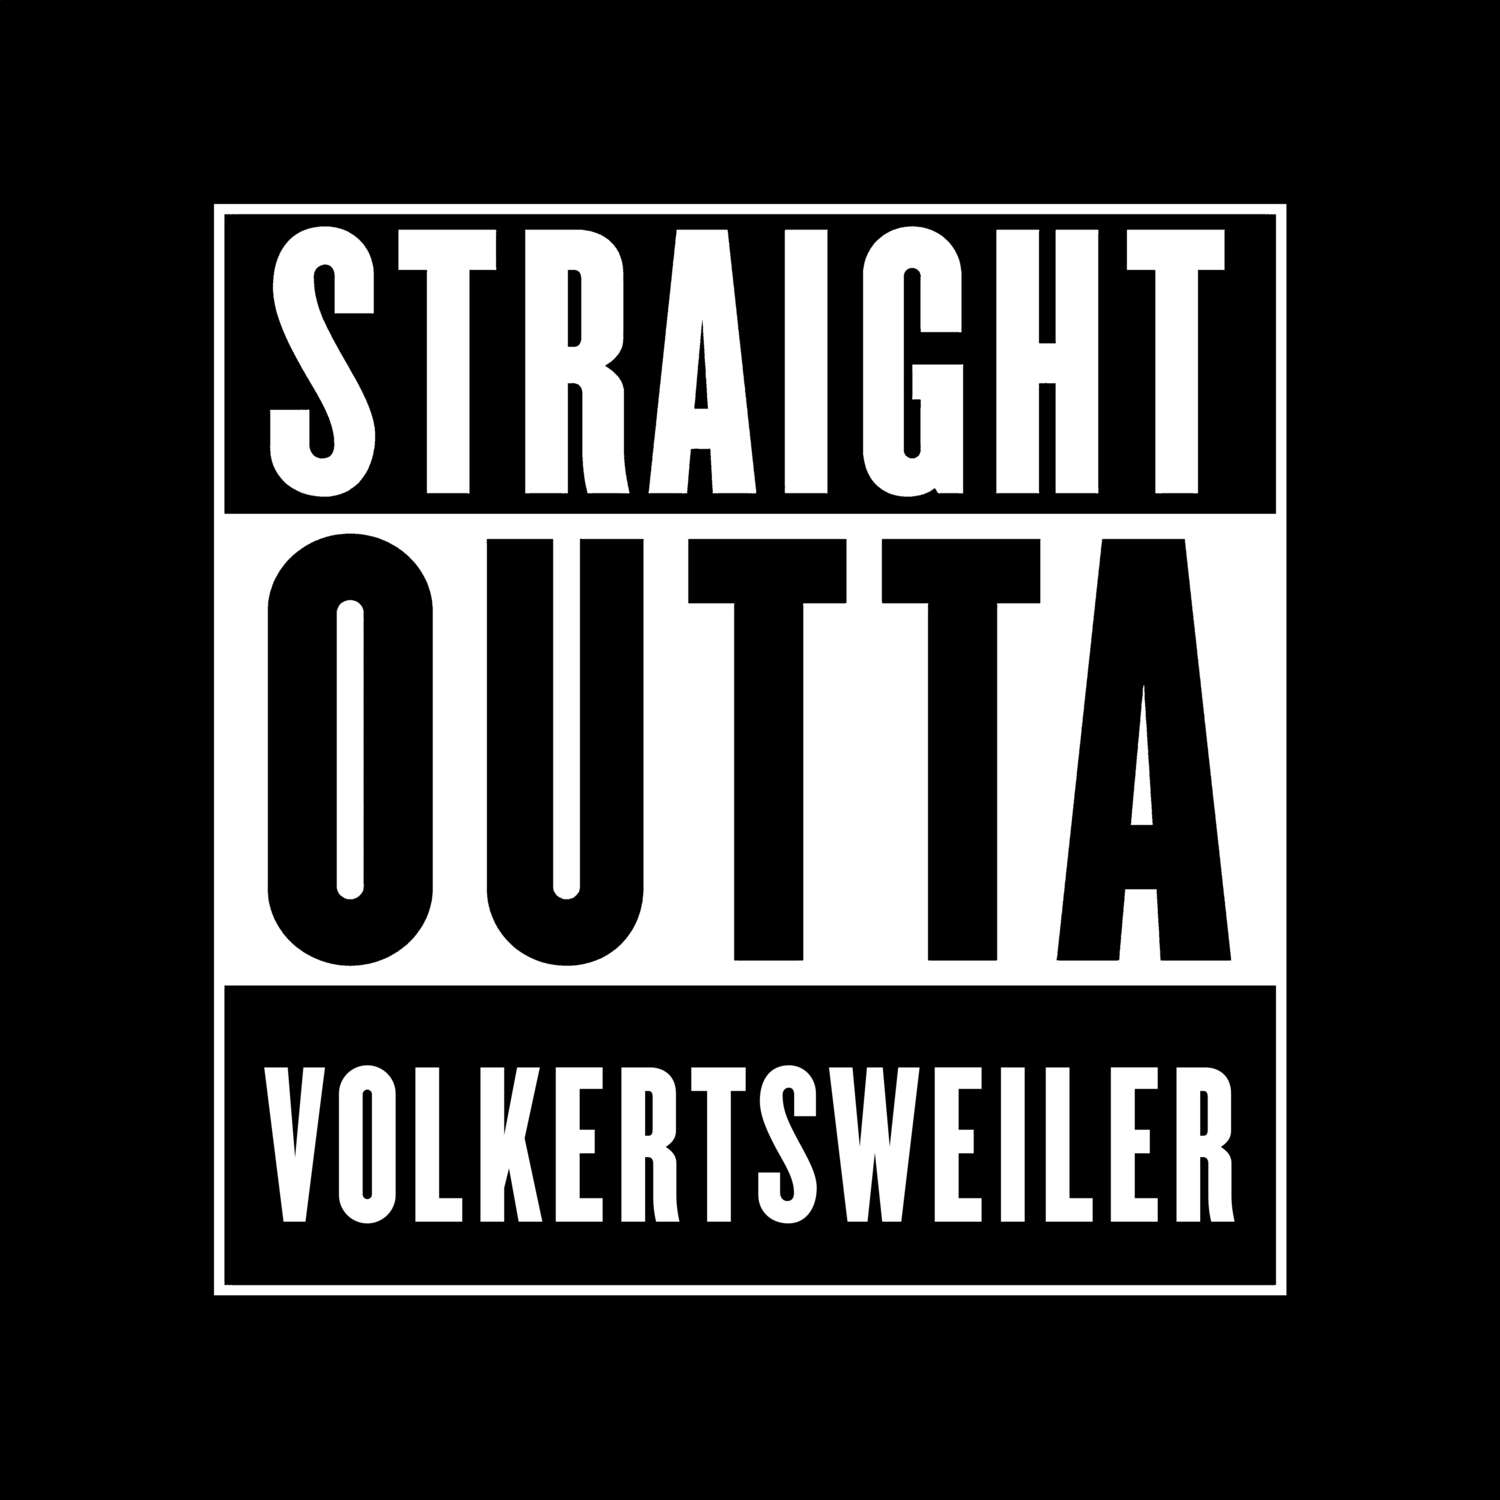 Volkertsweiler T-Shirt »Straight Outta«